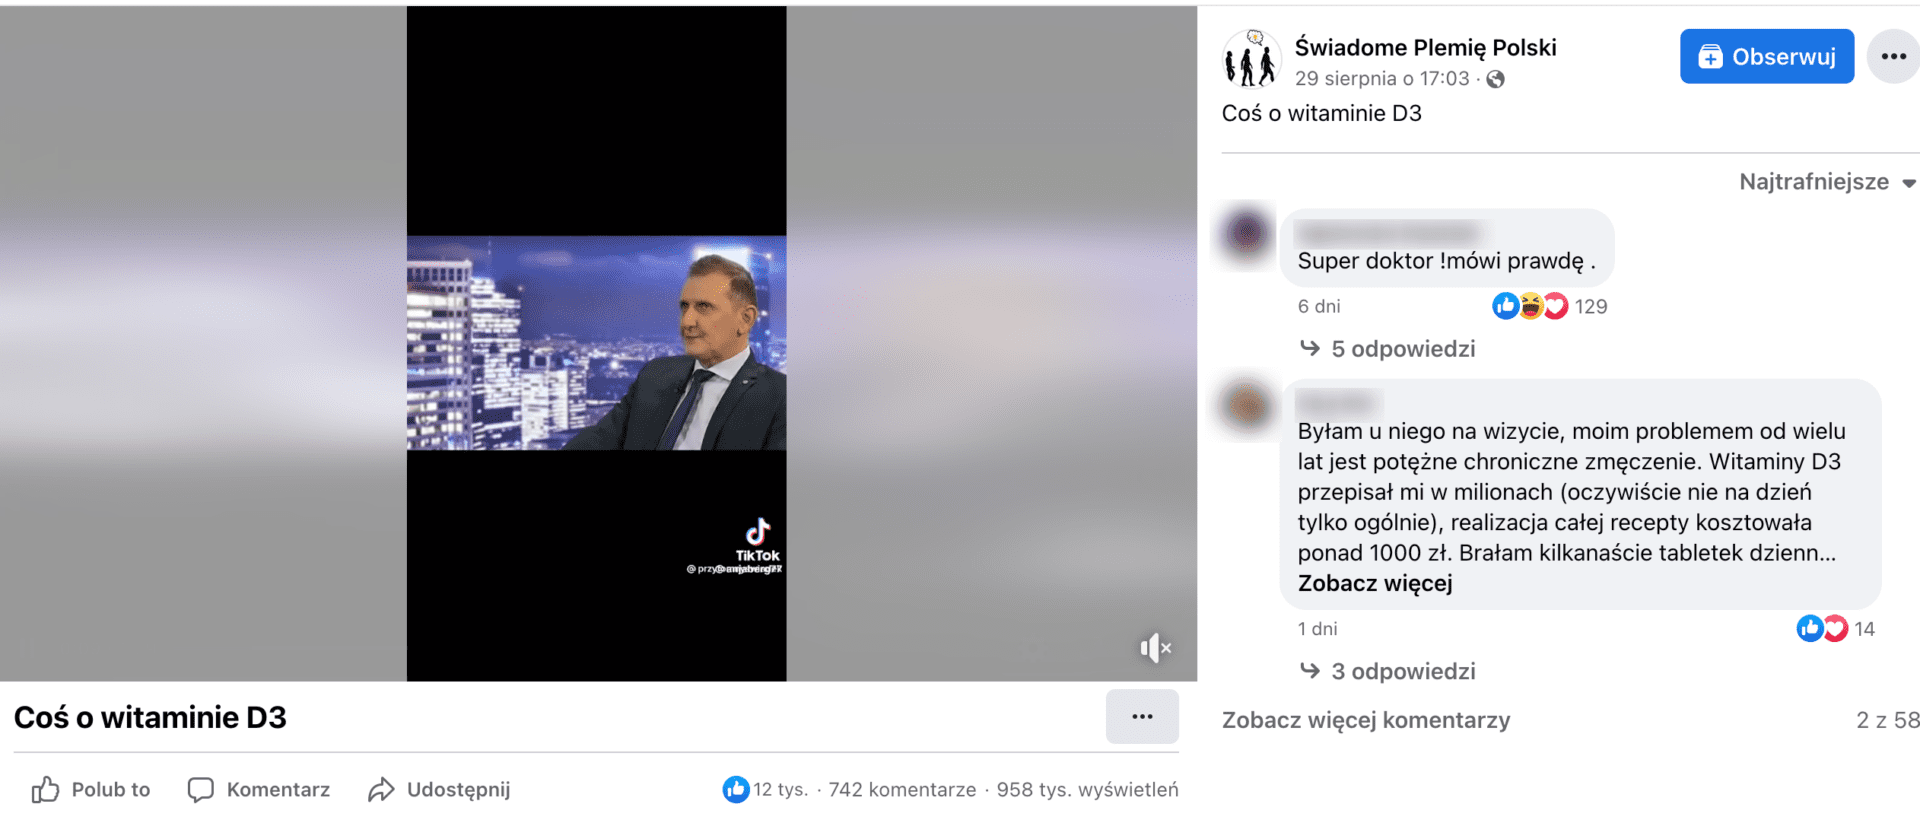 Zrzut ekranu posta na Facebooku. W kadrze TikToka znajduje się Hubert Czerniak: mężczyzna w szarym garniturze pod krawatem. Siedzi na tle grafiki przedstawiającej miasto nocą.